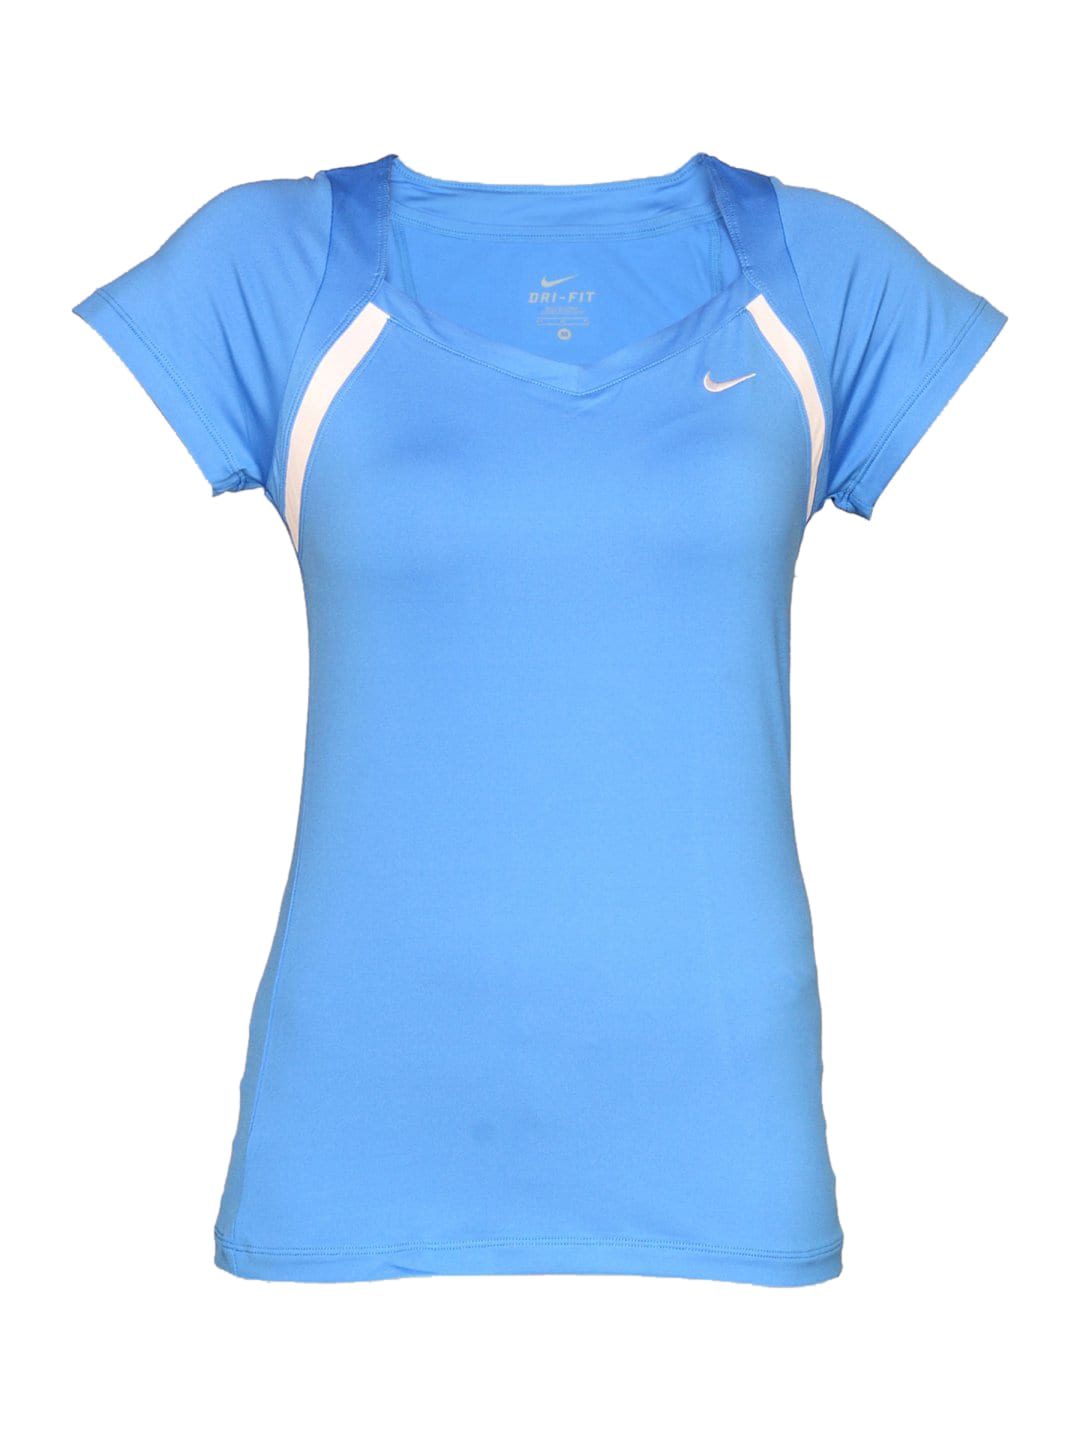 Nike Women's Border Blue T-shirt